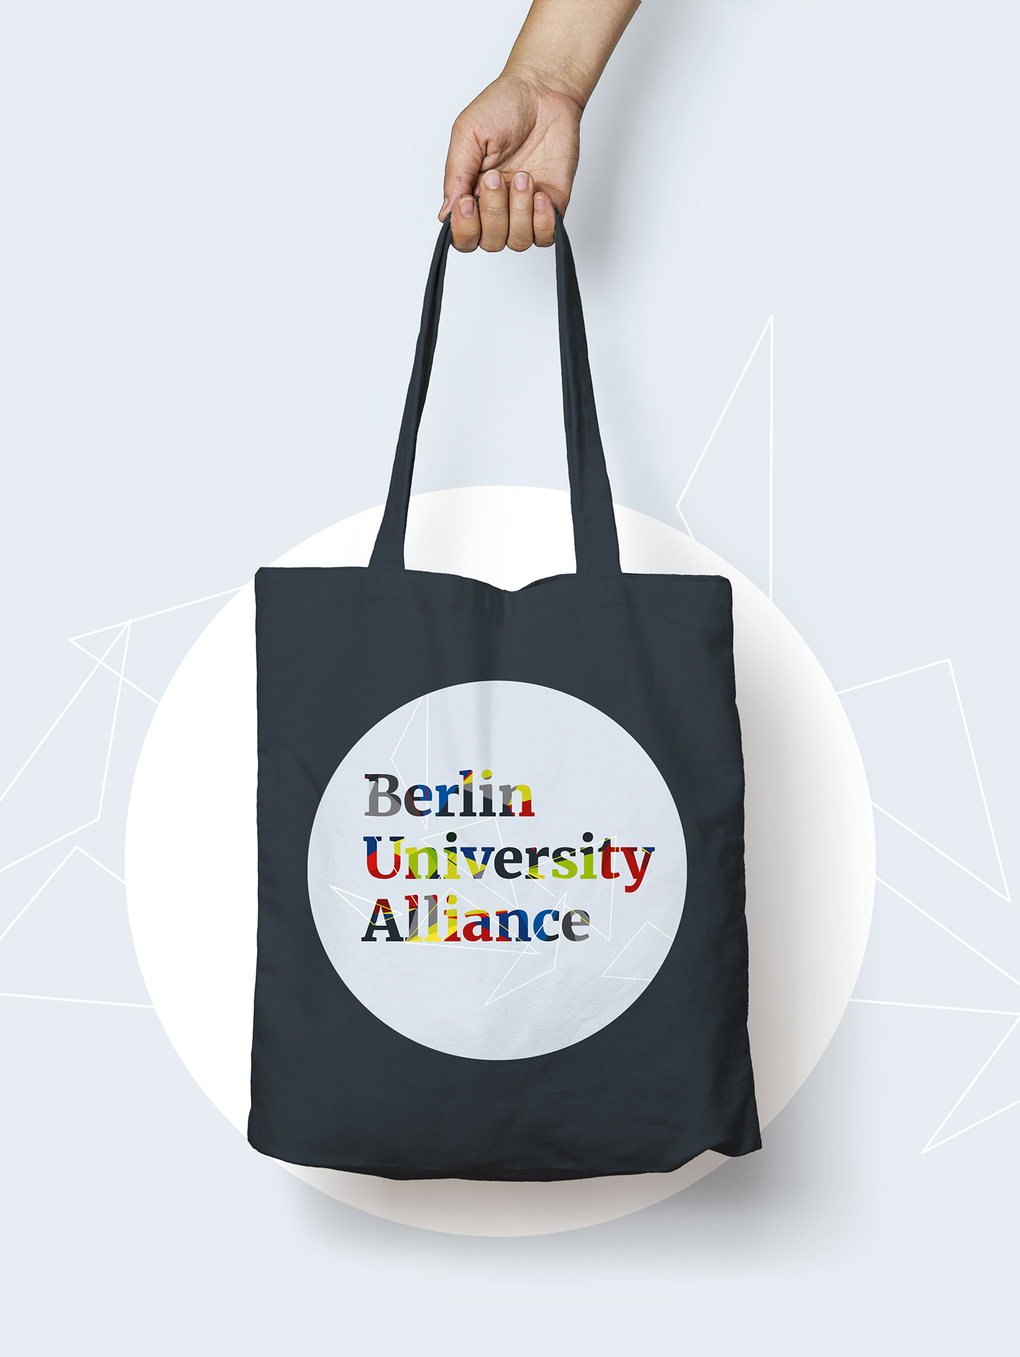 Berlin University Alliance Begehung Werbemittel